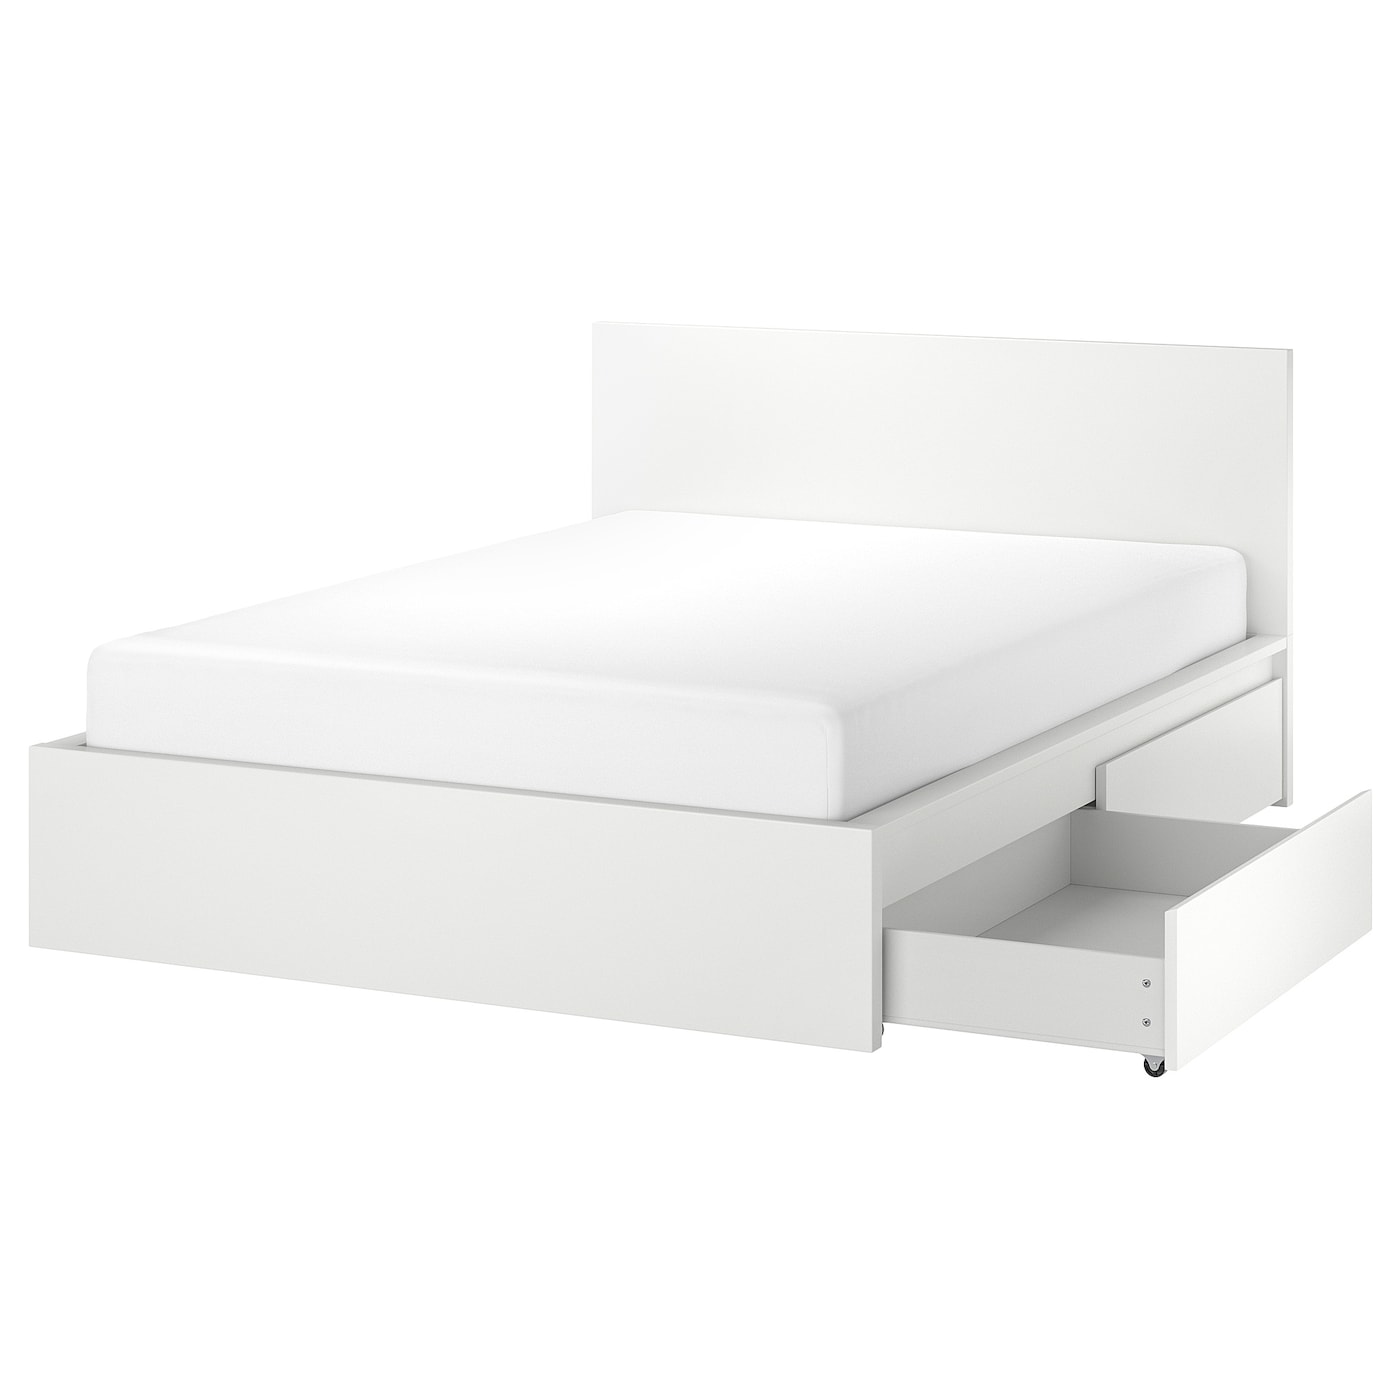 Каркас кровати с 4 ящиками для хранения - IKEA MALM/LINDBАDEN/LINDBÅDEN, 140х200 см, белый МАЛЬМ/ЛИНДБАДЕН ИКЕА